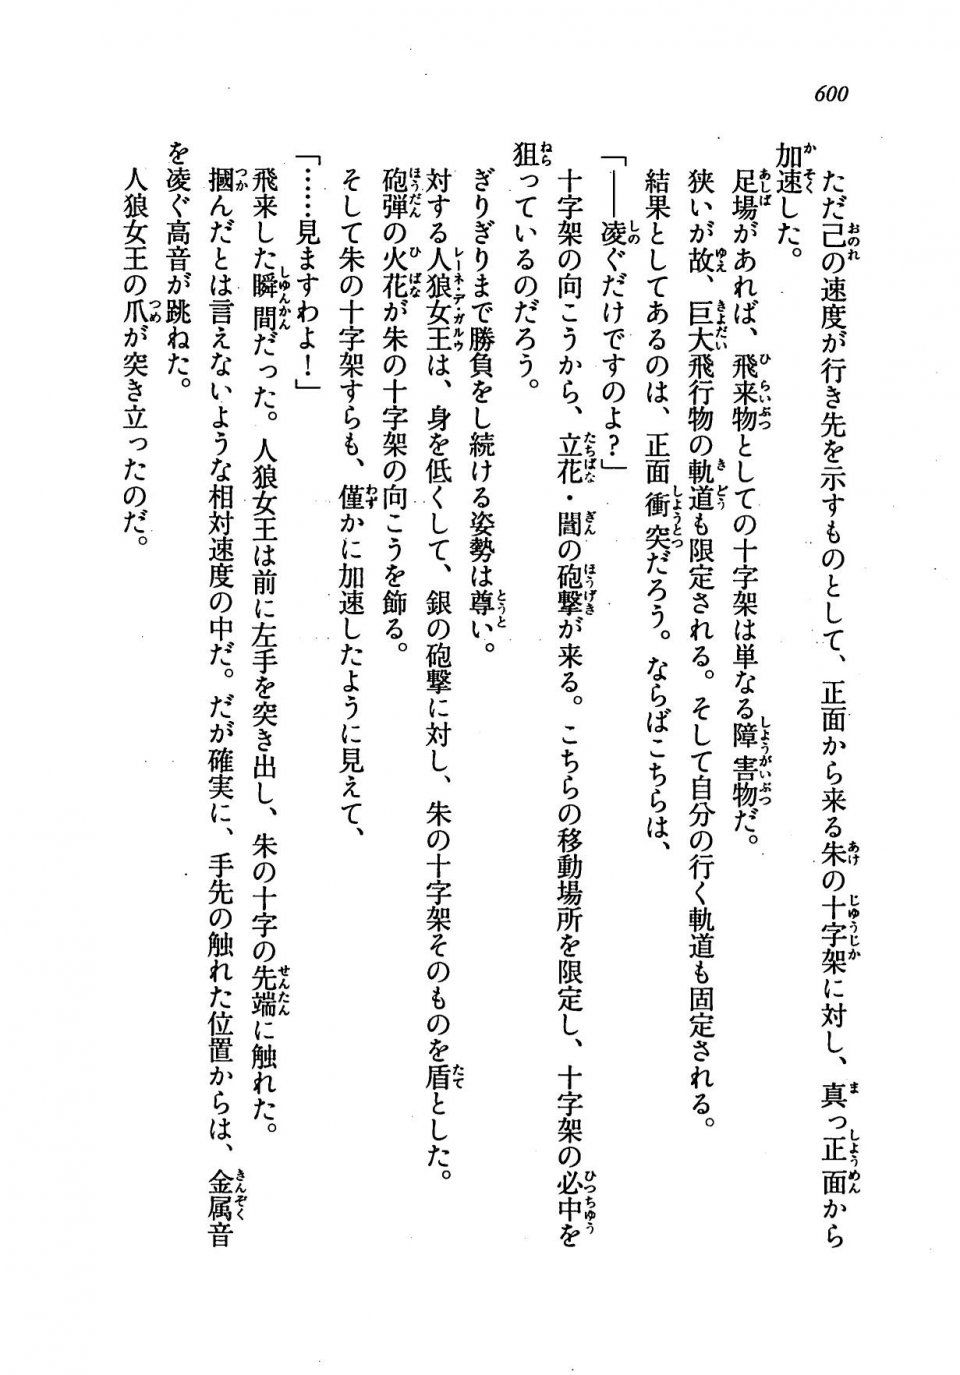 Kyoukai Senjou no Horizon LN Vol 19(8A) - Photo #600